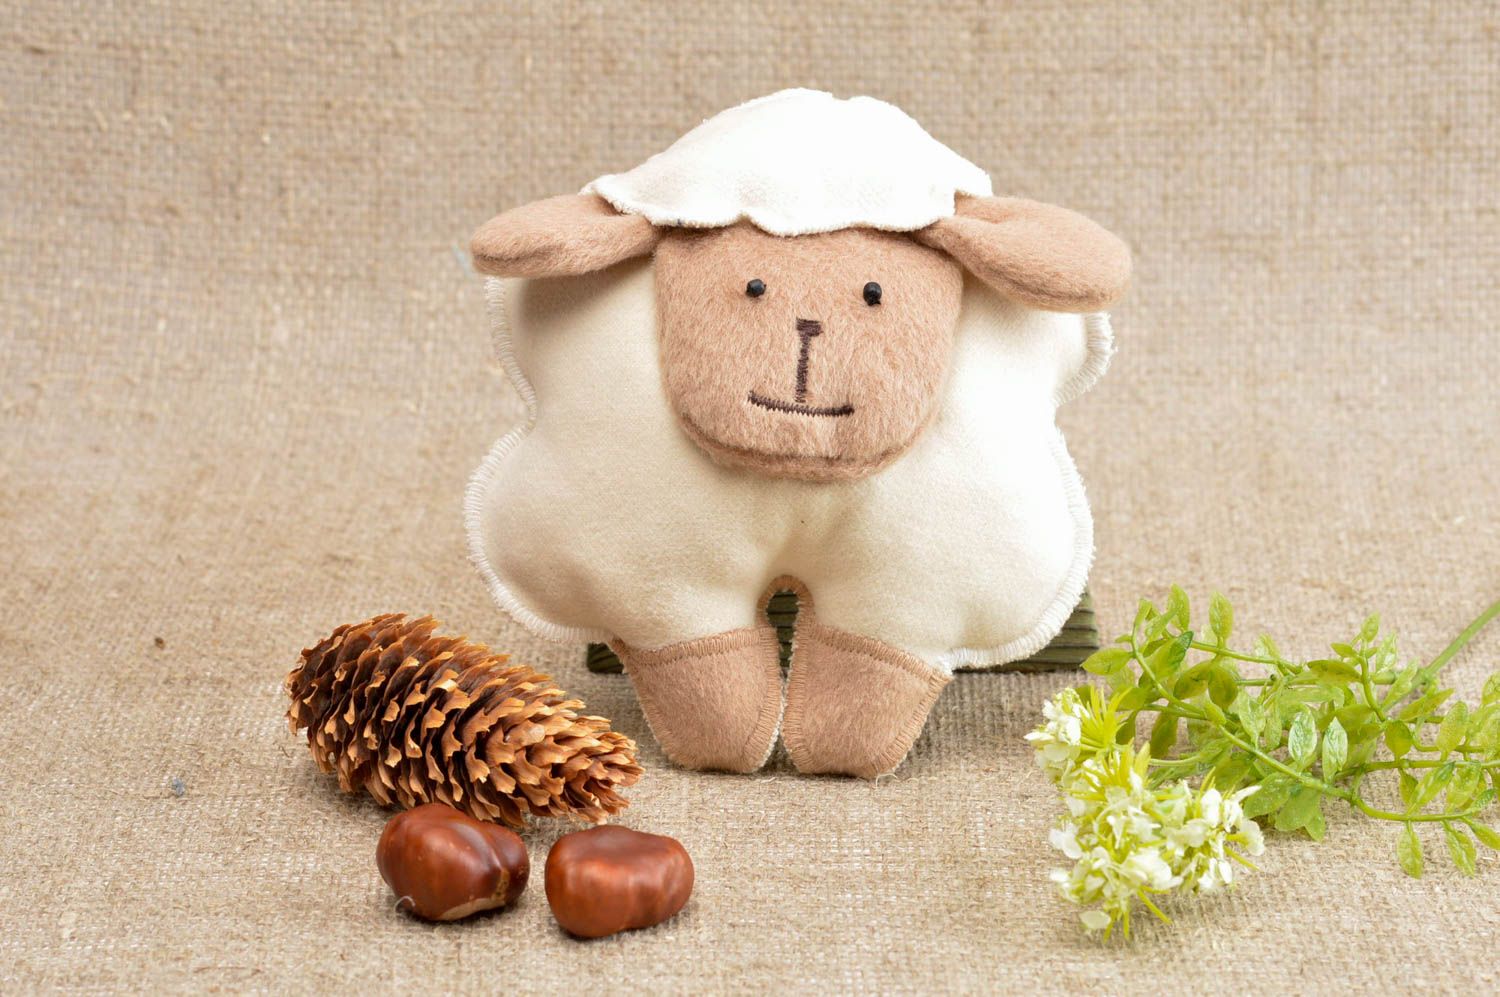 Игрушка овца ручной работы детская игрушка из ткани мягкая игрушка красивая фото 1